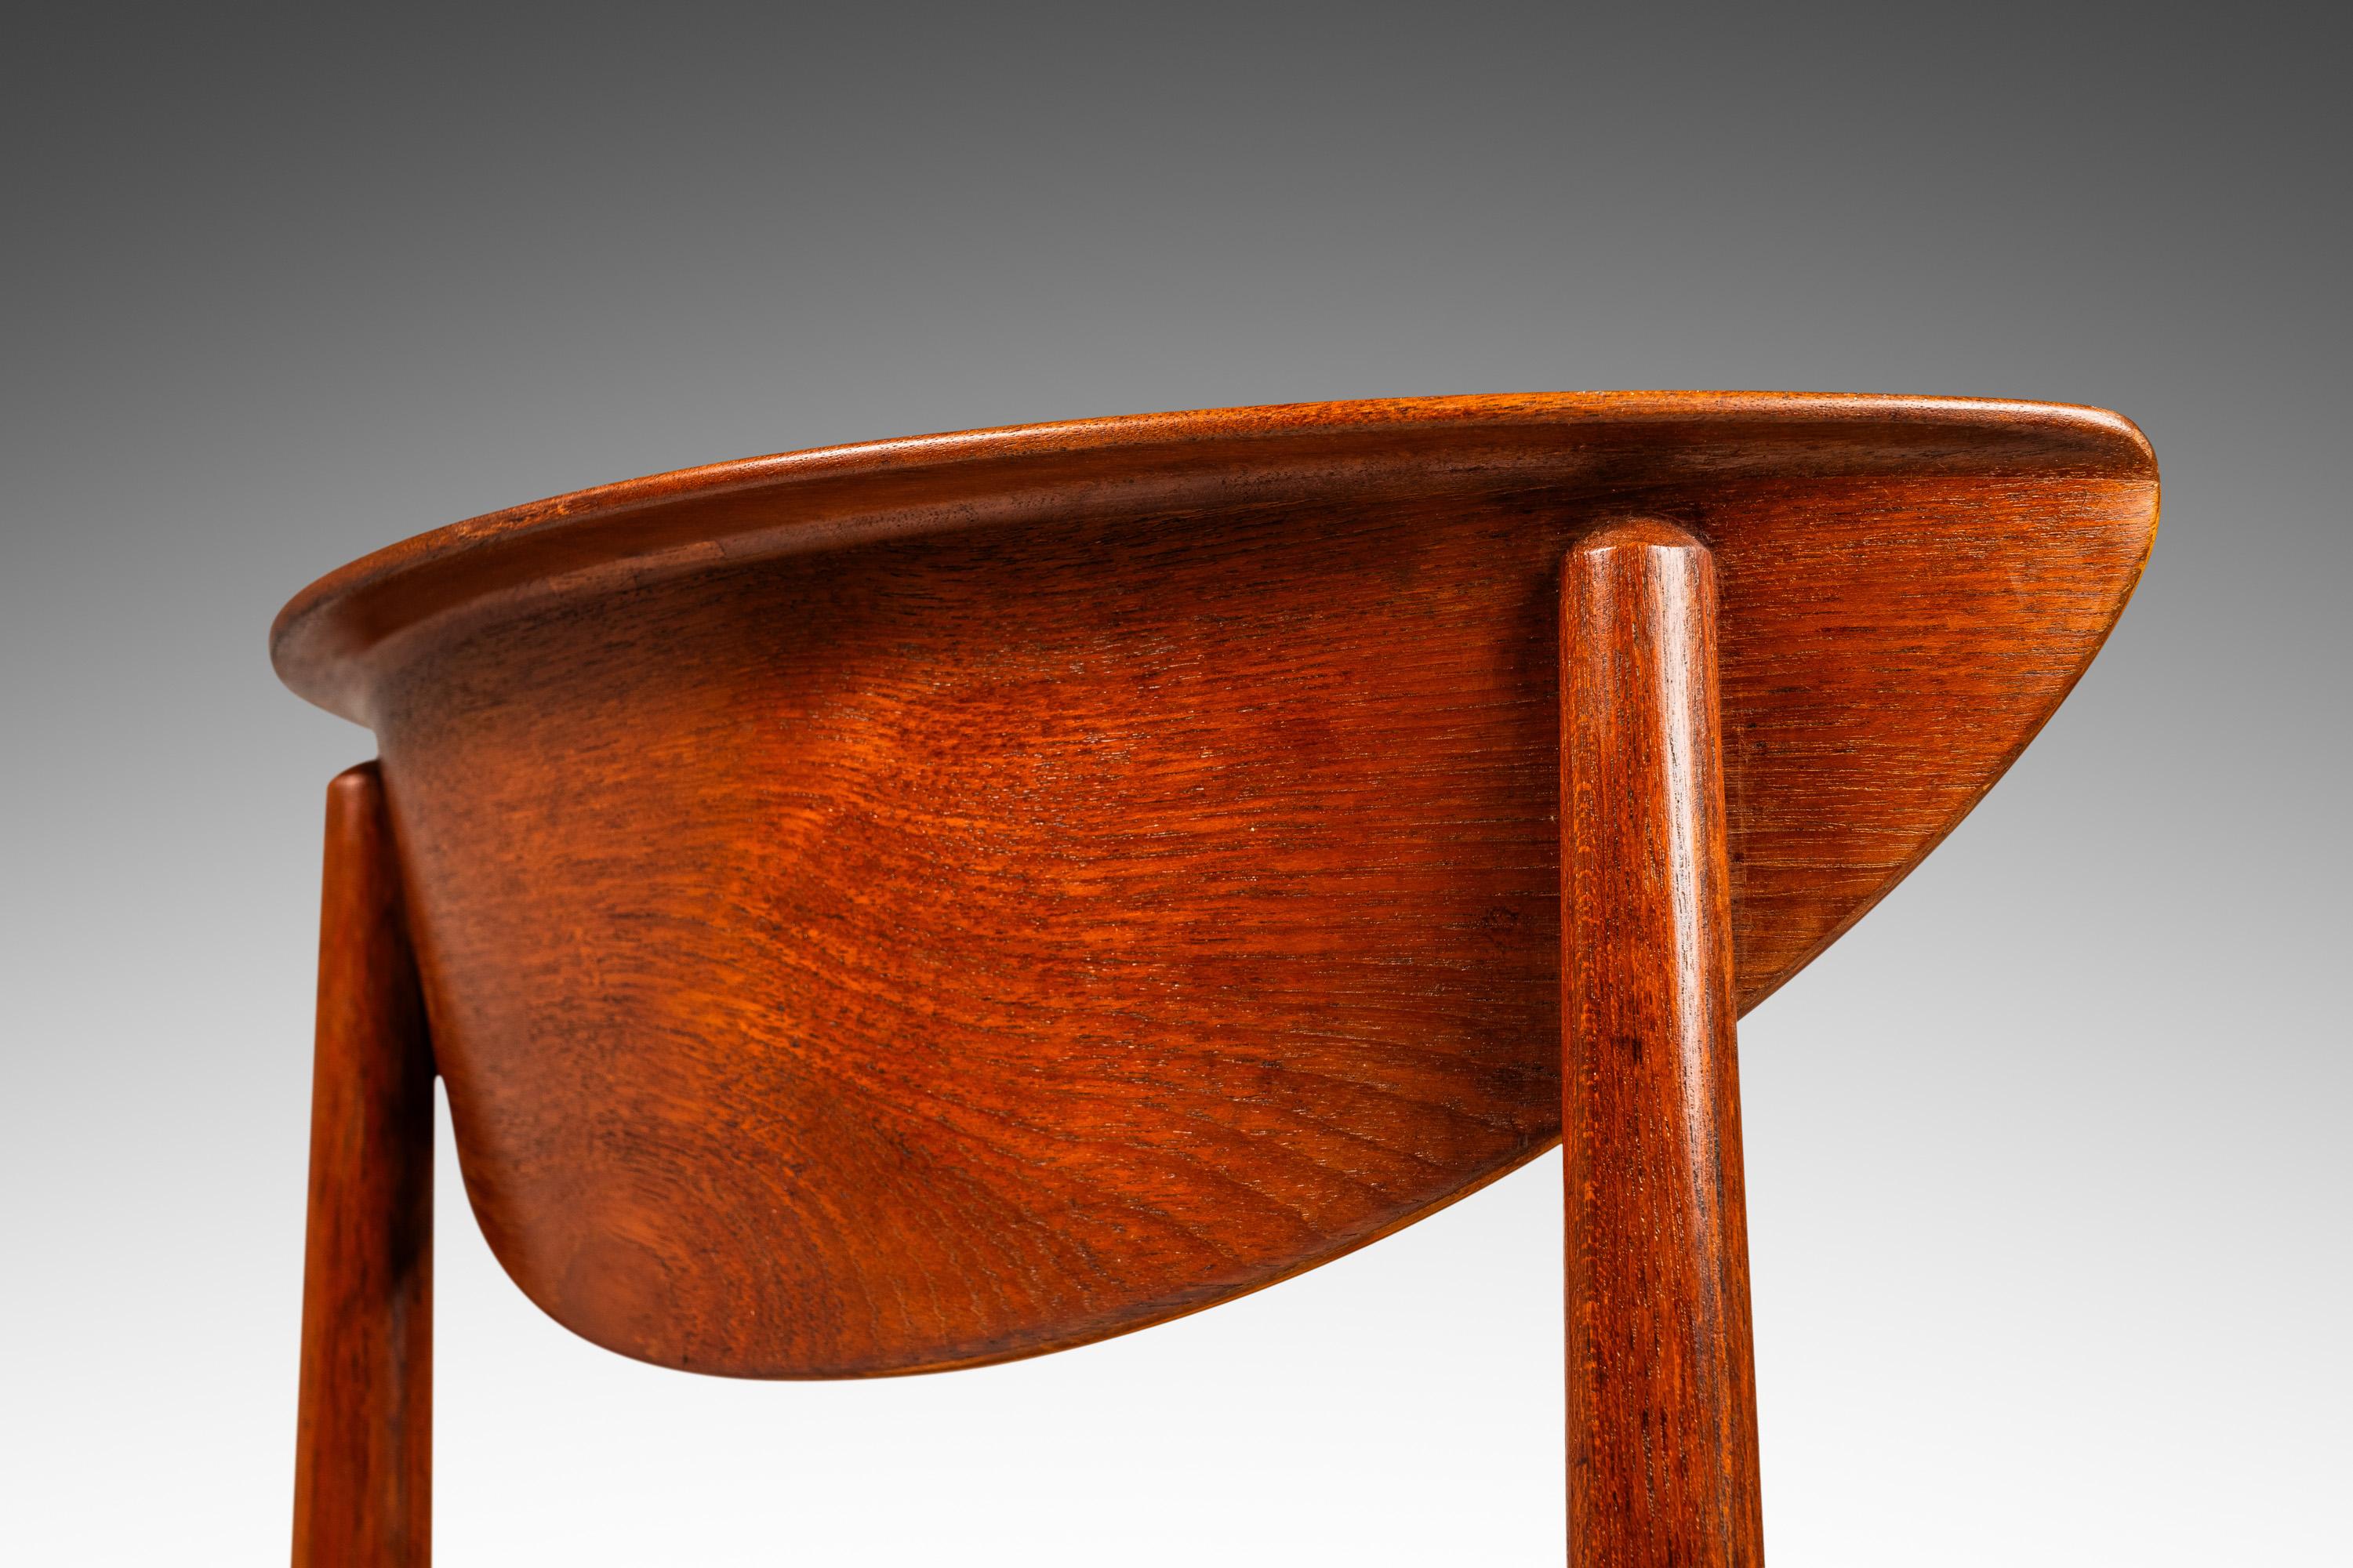 Mid-20th Century Model 317 Desk Chair, Teak & Leather for Søborg Møbelfabrik, Denmark, c. 1950's For Sale